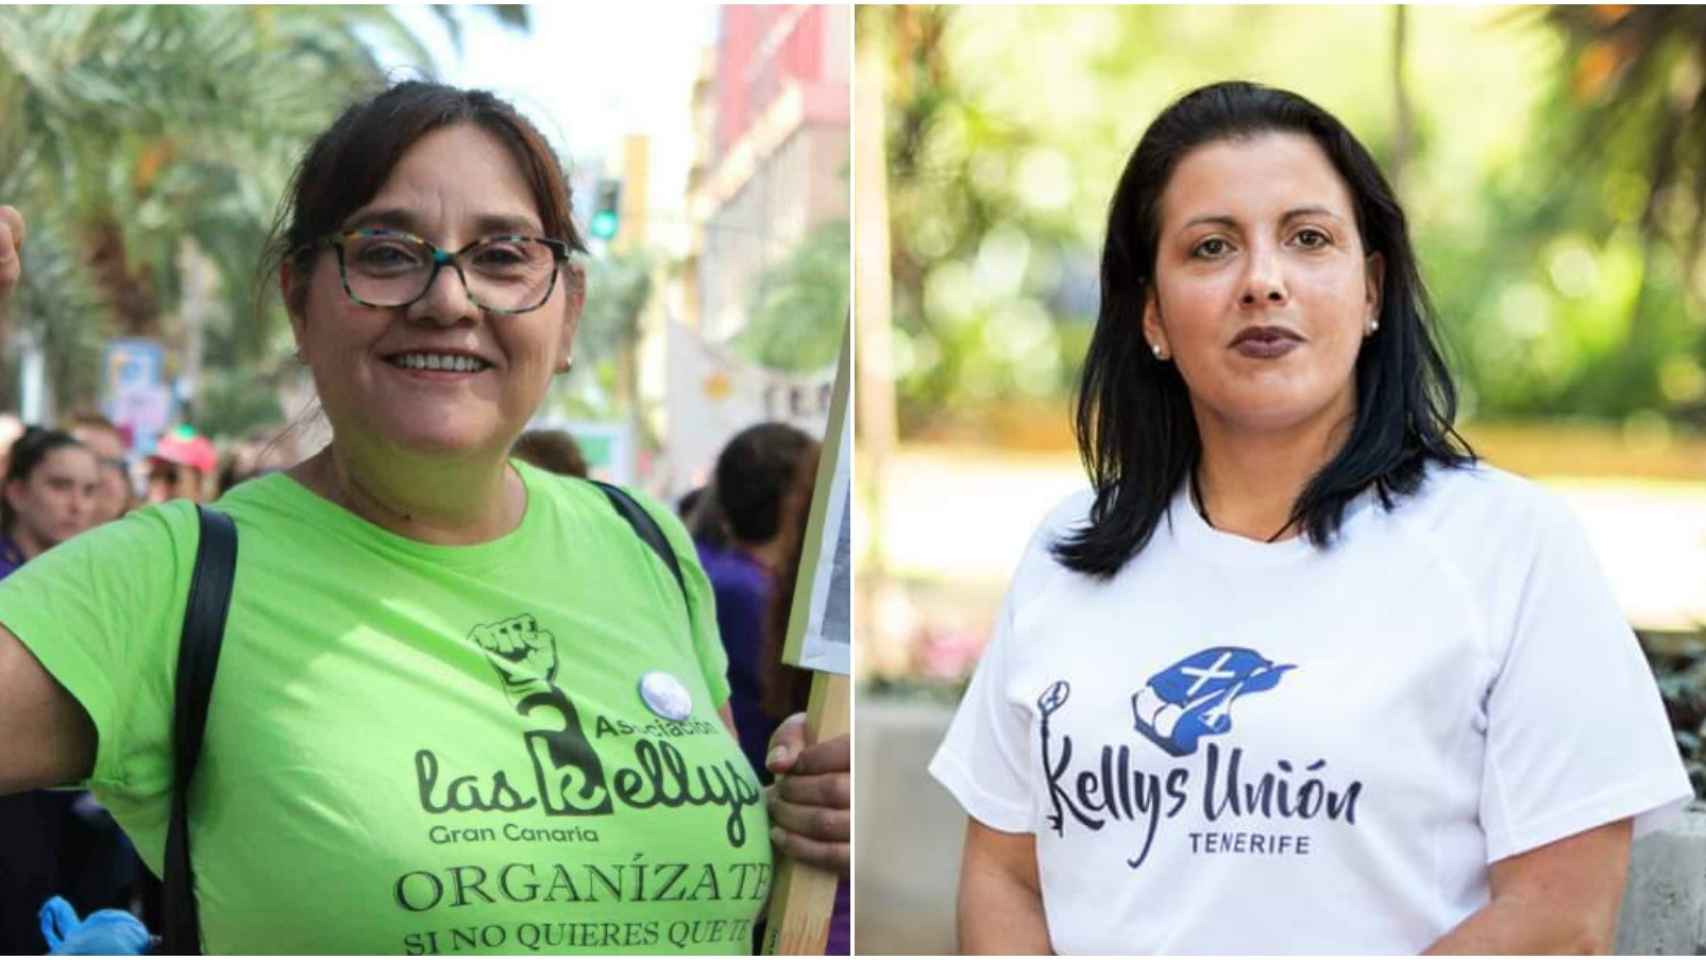 A la izquierda Marcia Díaz, portavoz de 'Las Kellys' en Gran Canaria. A la derecha Mónica García, presidenta de 'Kellys Unión Tenerife'.